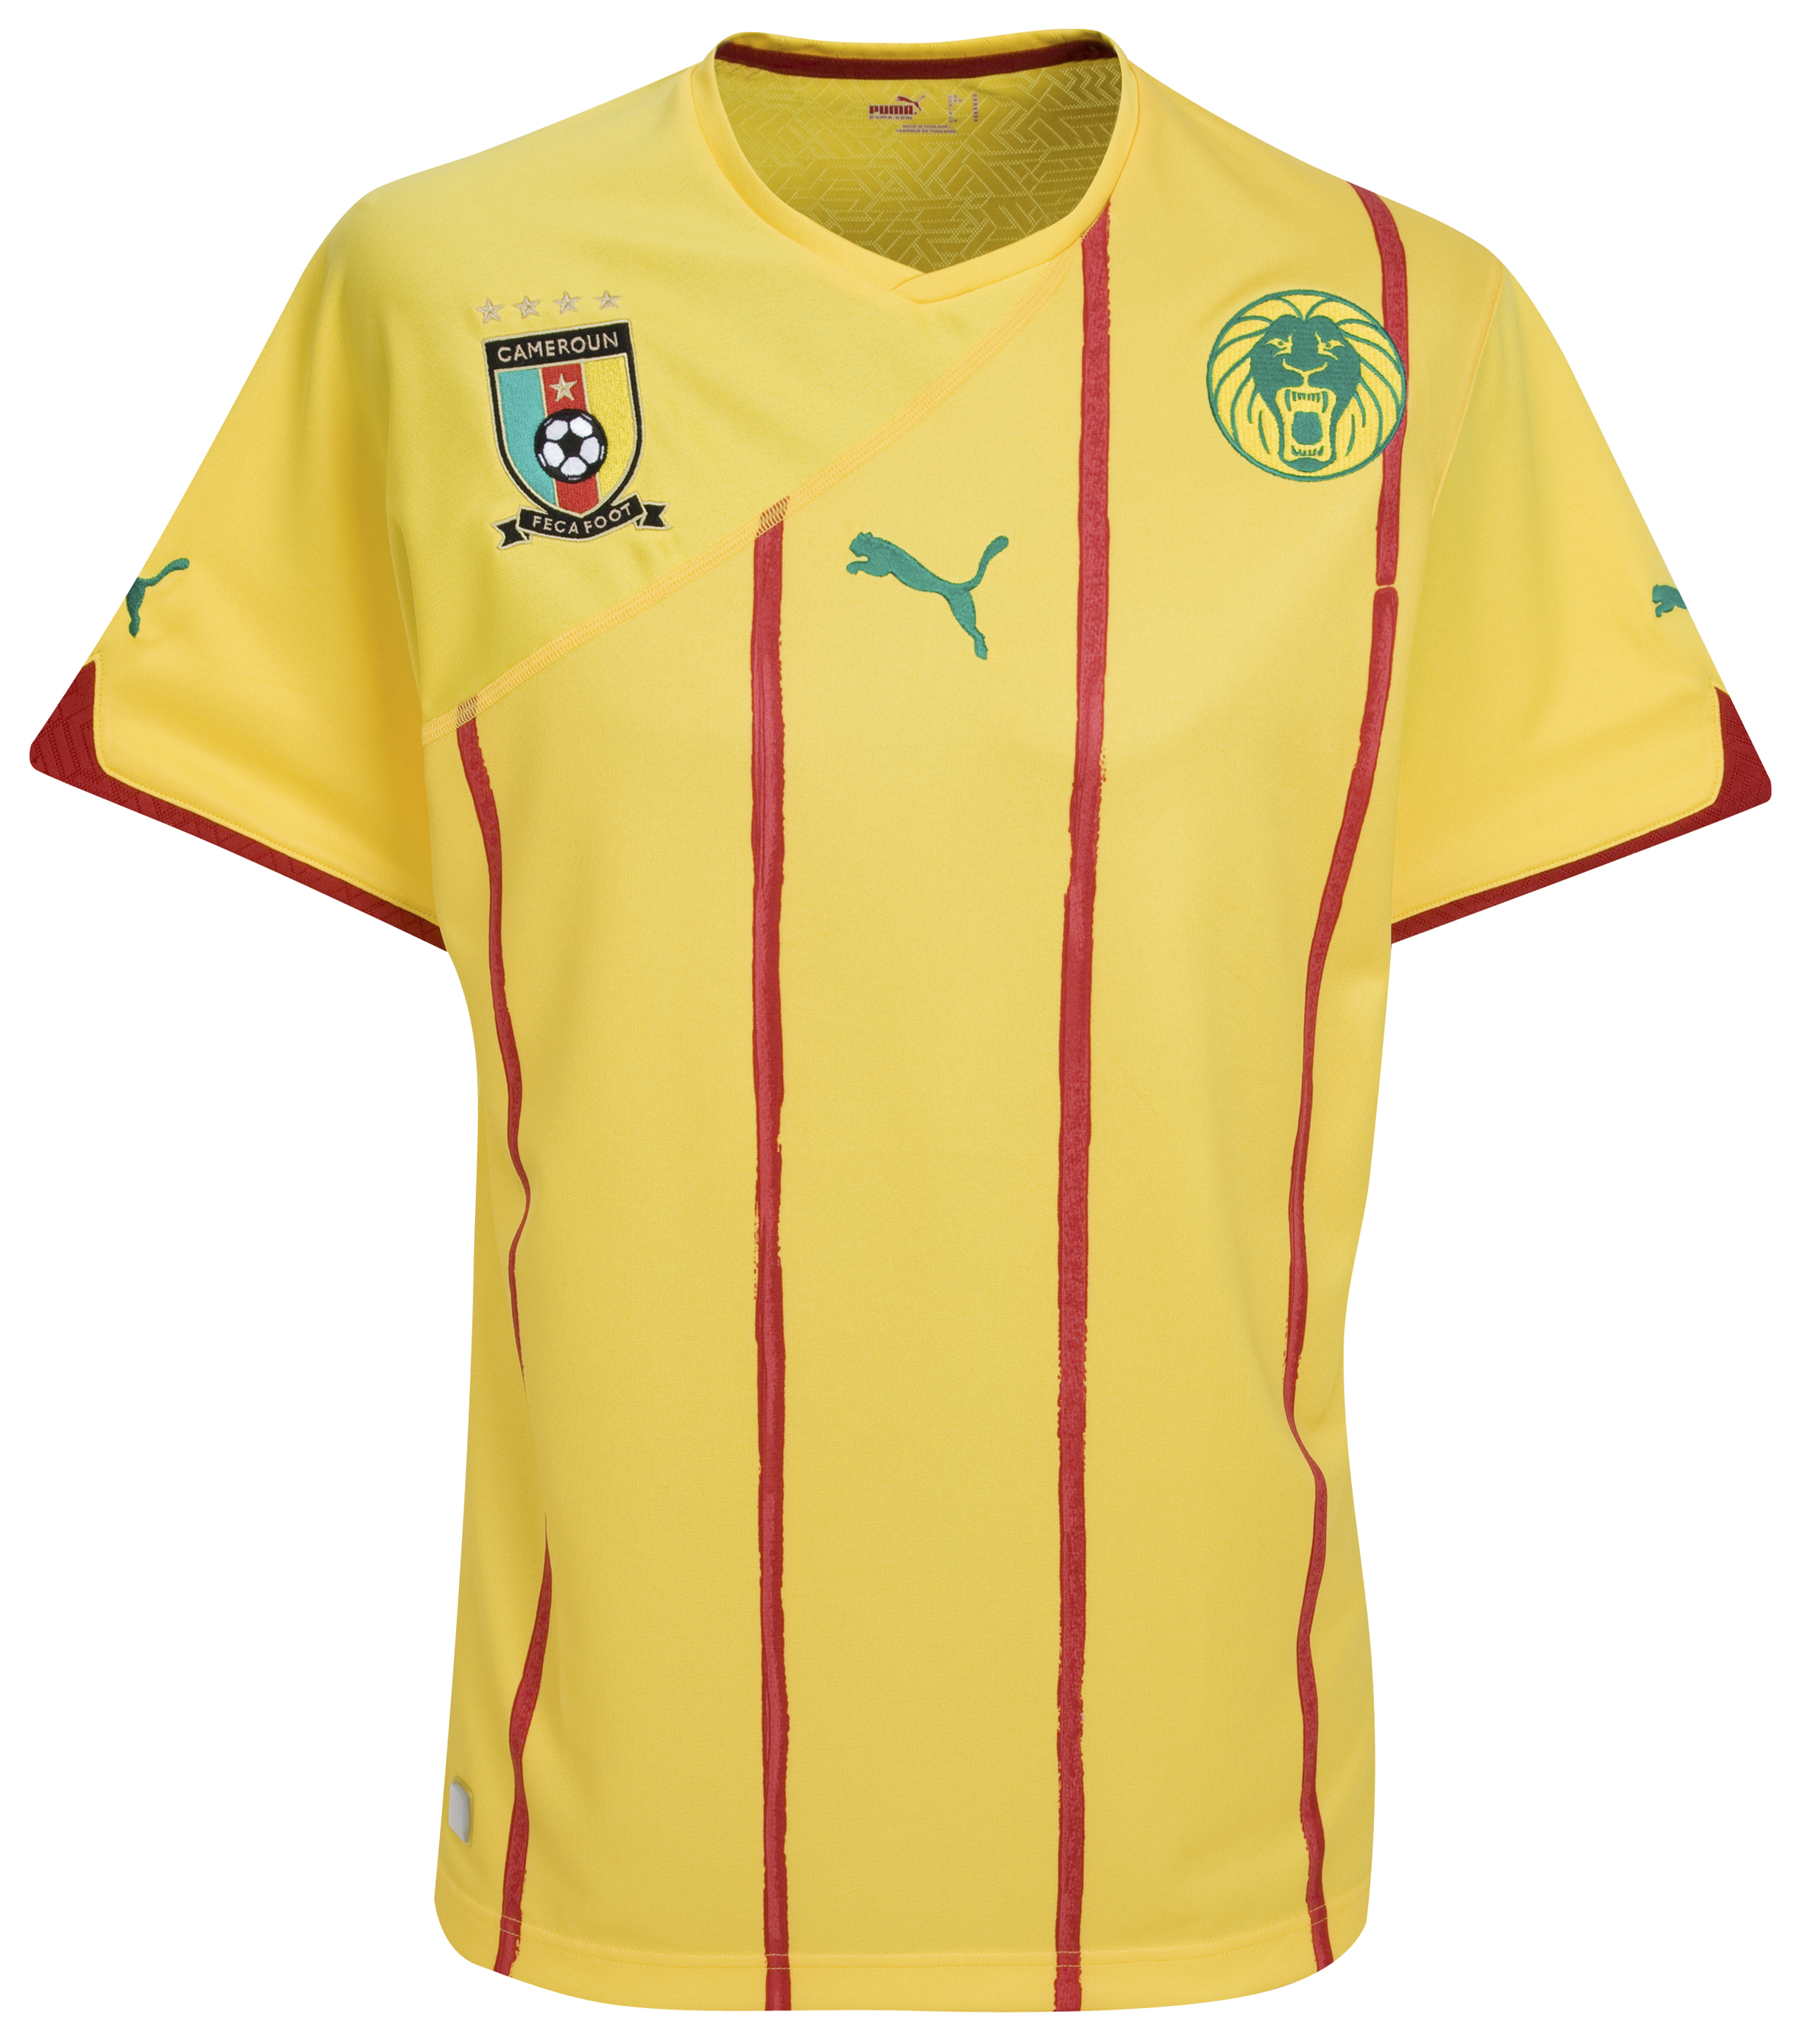 .¸-(_ (قمصان جميع المنتخبات لكأس العالم 2010) _)-,. Kb-60882